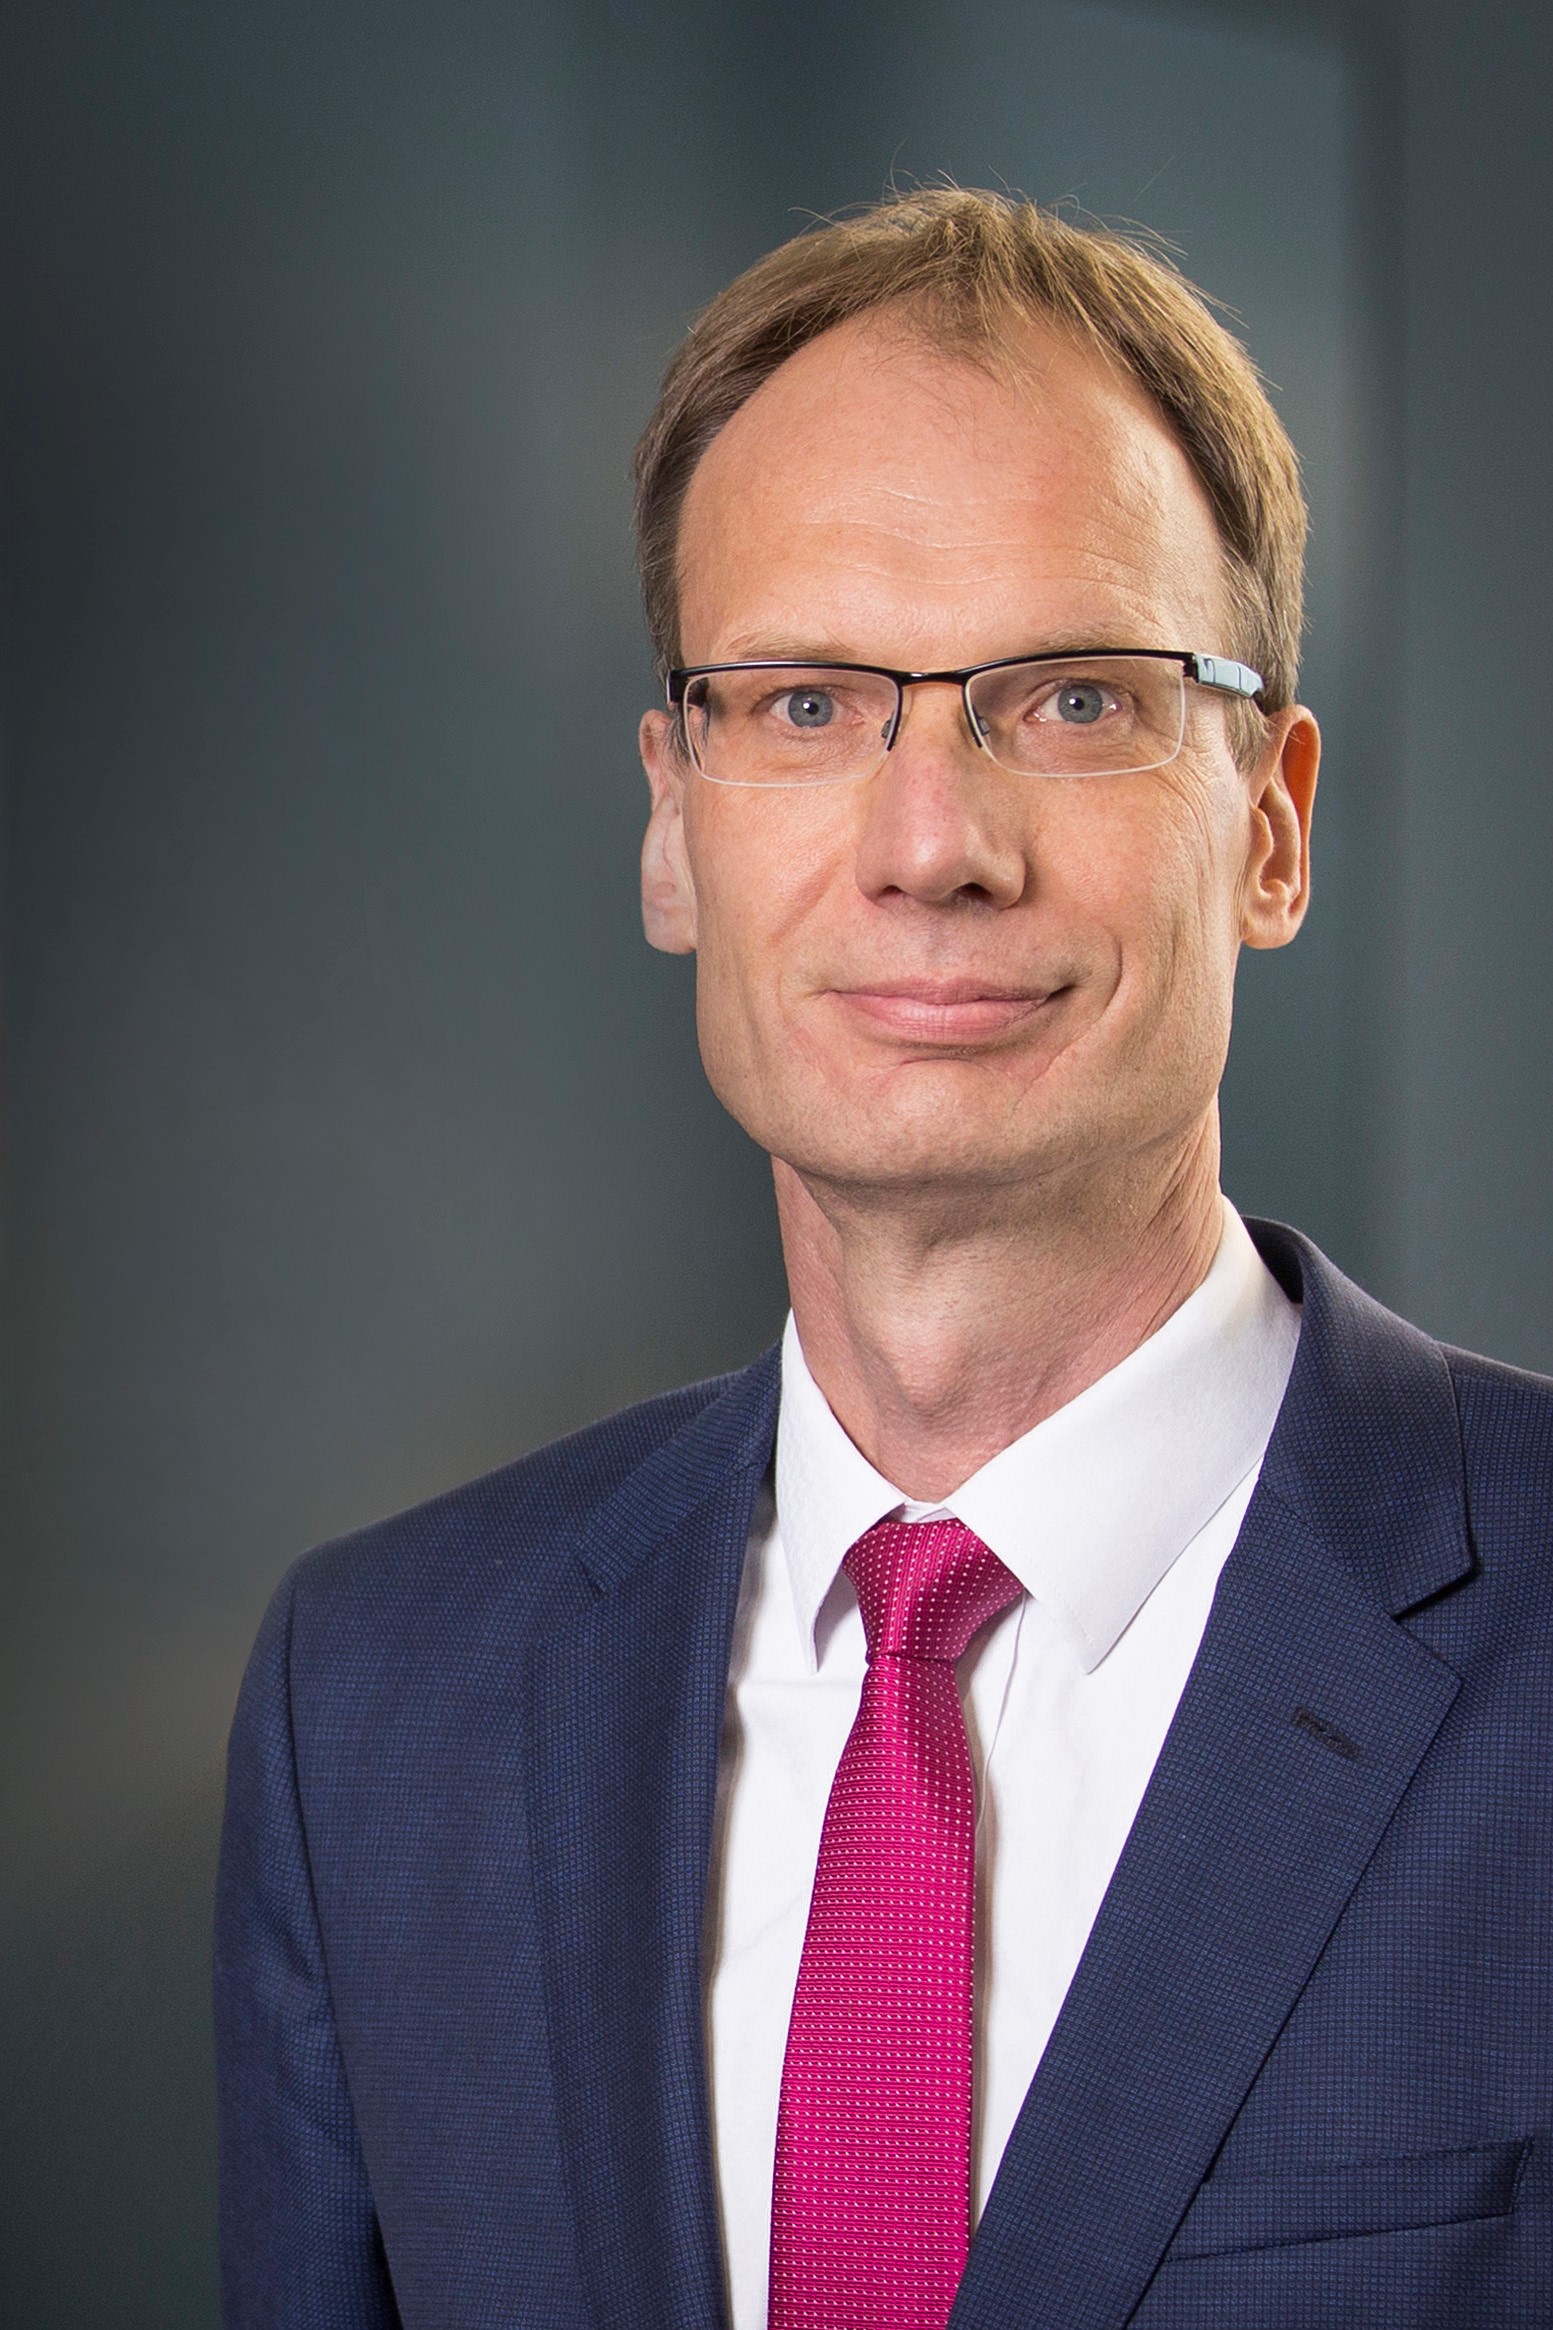 Kinh doanh - Vingroup bổ nhiệm ông Michael Lohscheller làm Tổng giám đốc VinFast toàn cầu